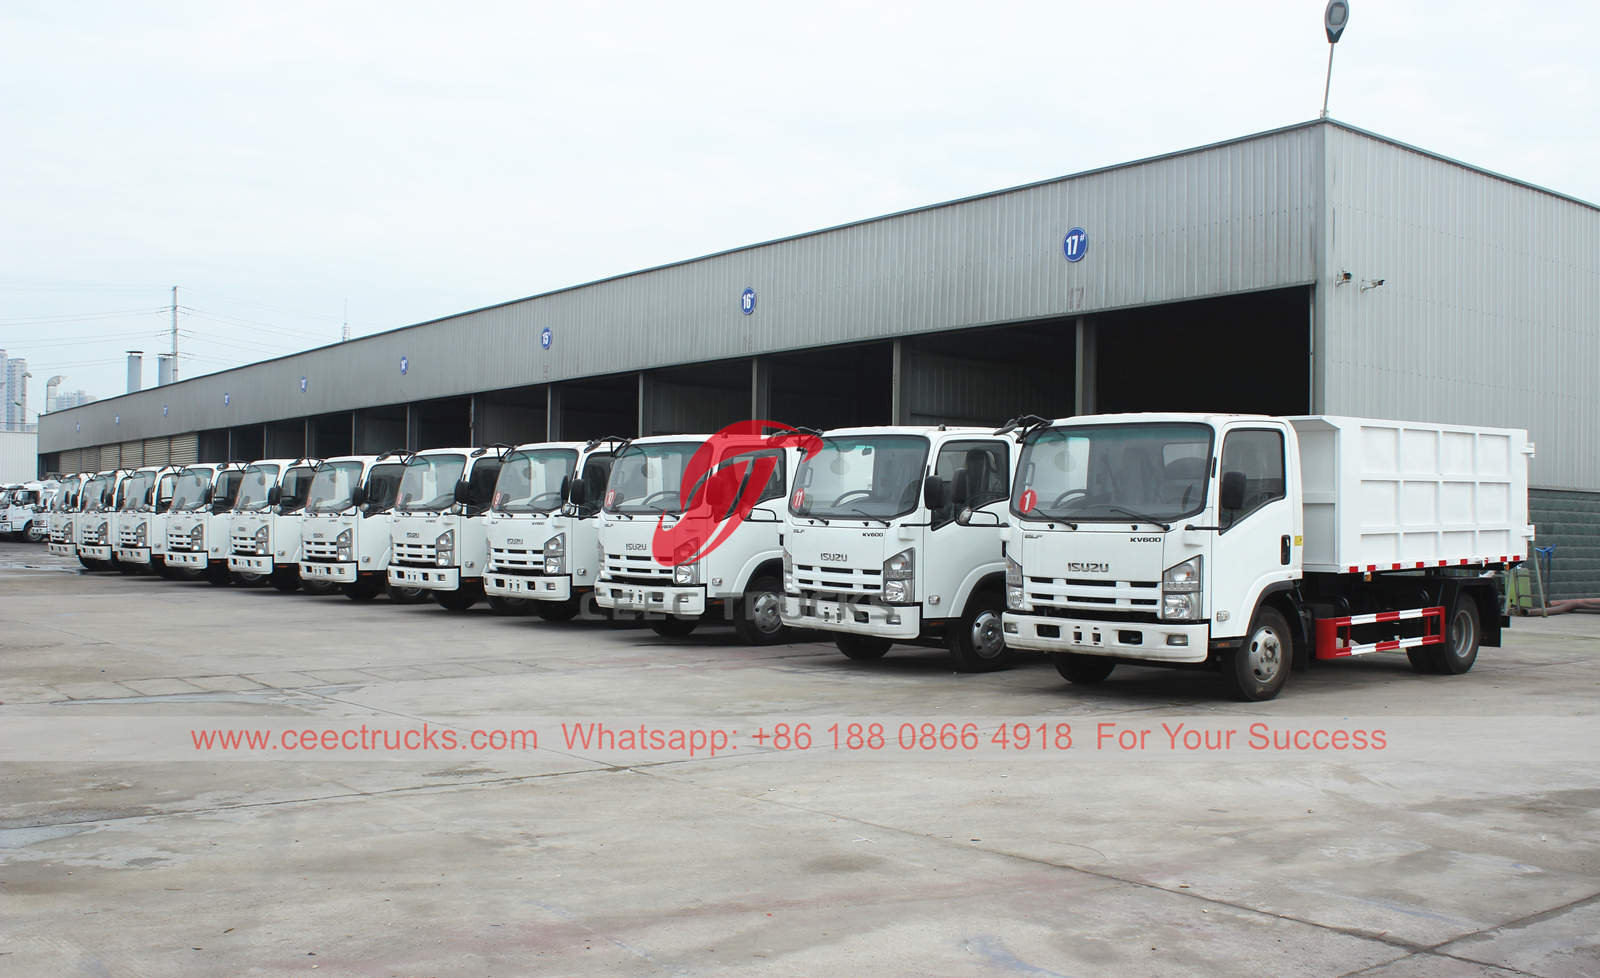 11 units ISUZU garbage collector trucks were delivered to Dubai